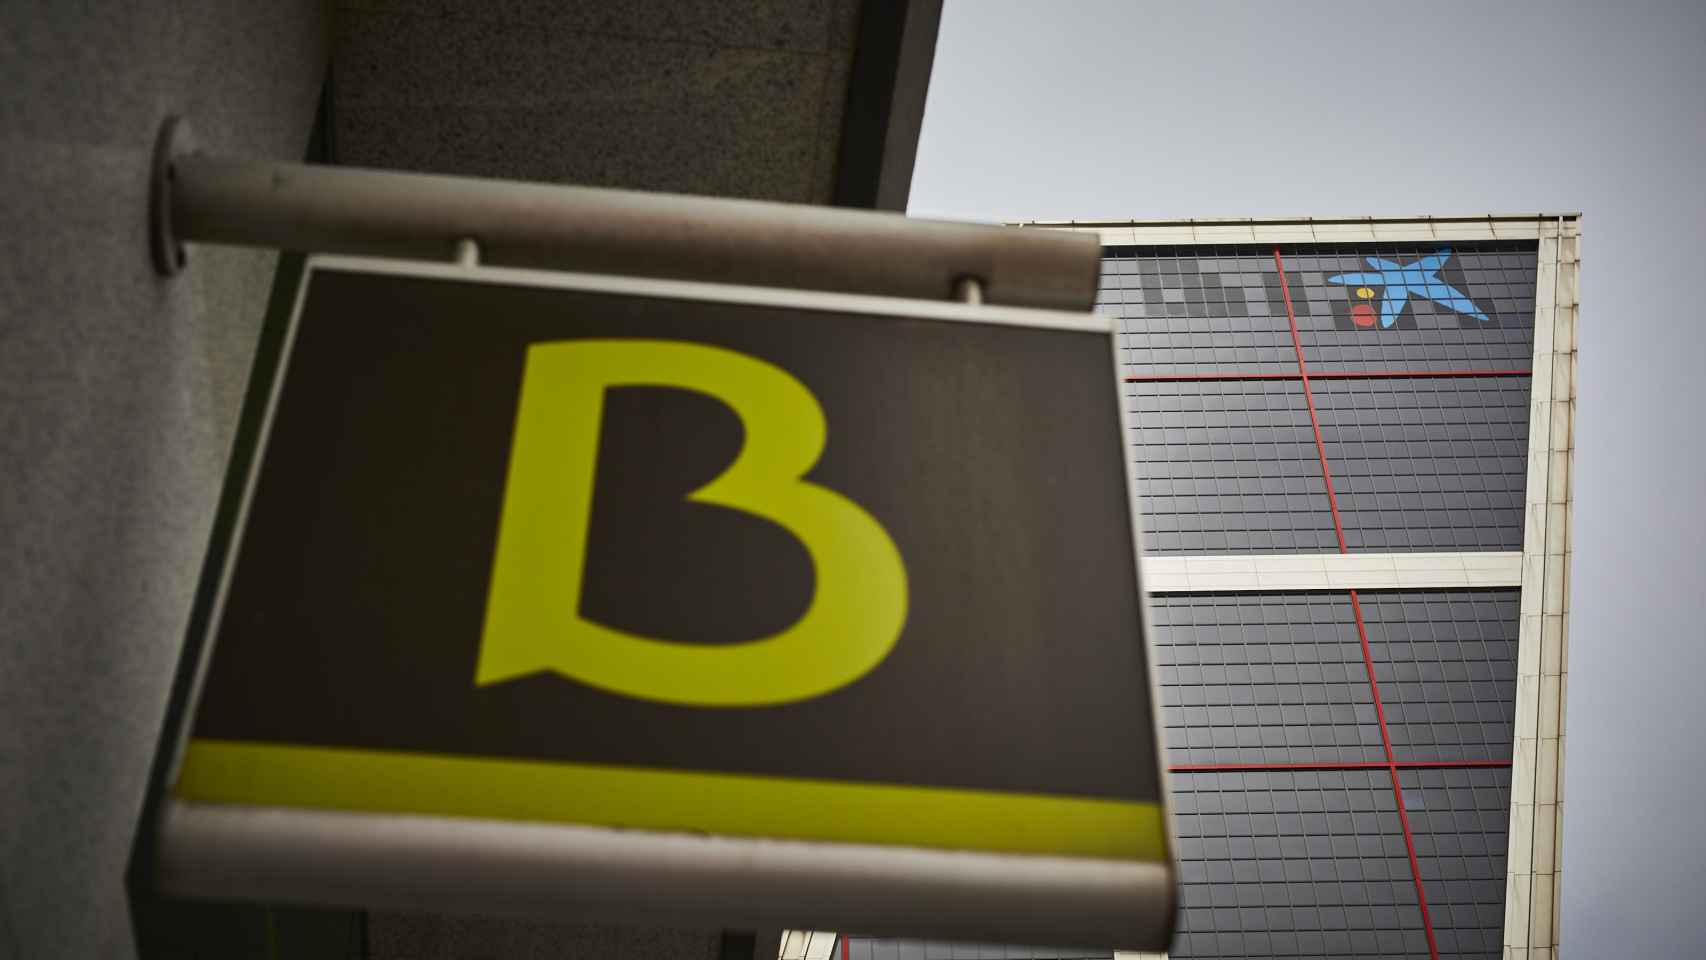 Un cartel con el símbolo de Bankia delante del logo de Caixabank tras su sustitución por el de Bankia en las torres Kio, en Madrid (España).